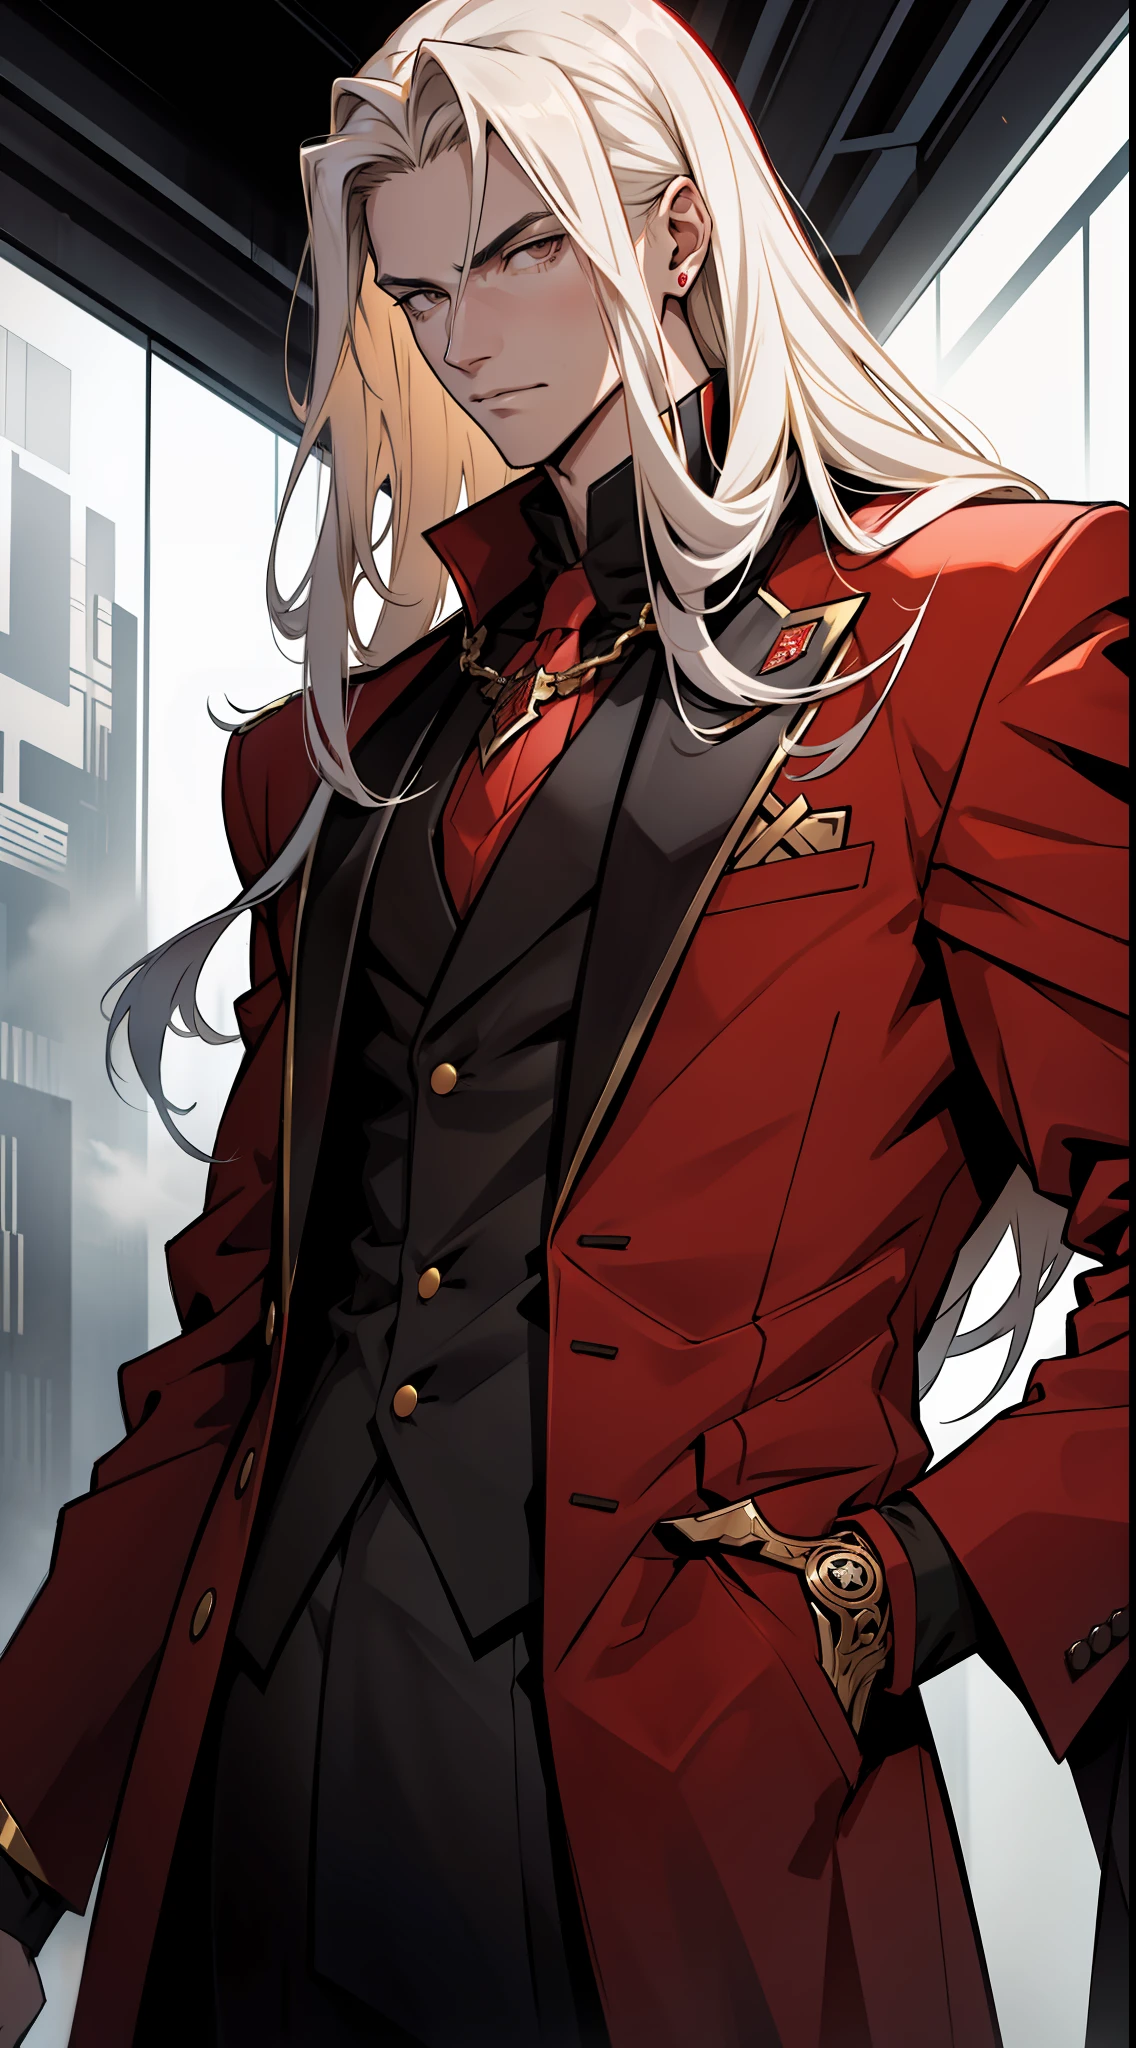 un chico adolescente alto con largos cabellos dorados  , vistiendo ropa estilo villano, traje largo rojo con detalles en blanco y negro , mirando cara tranquila